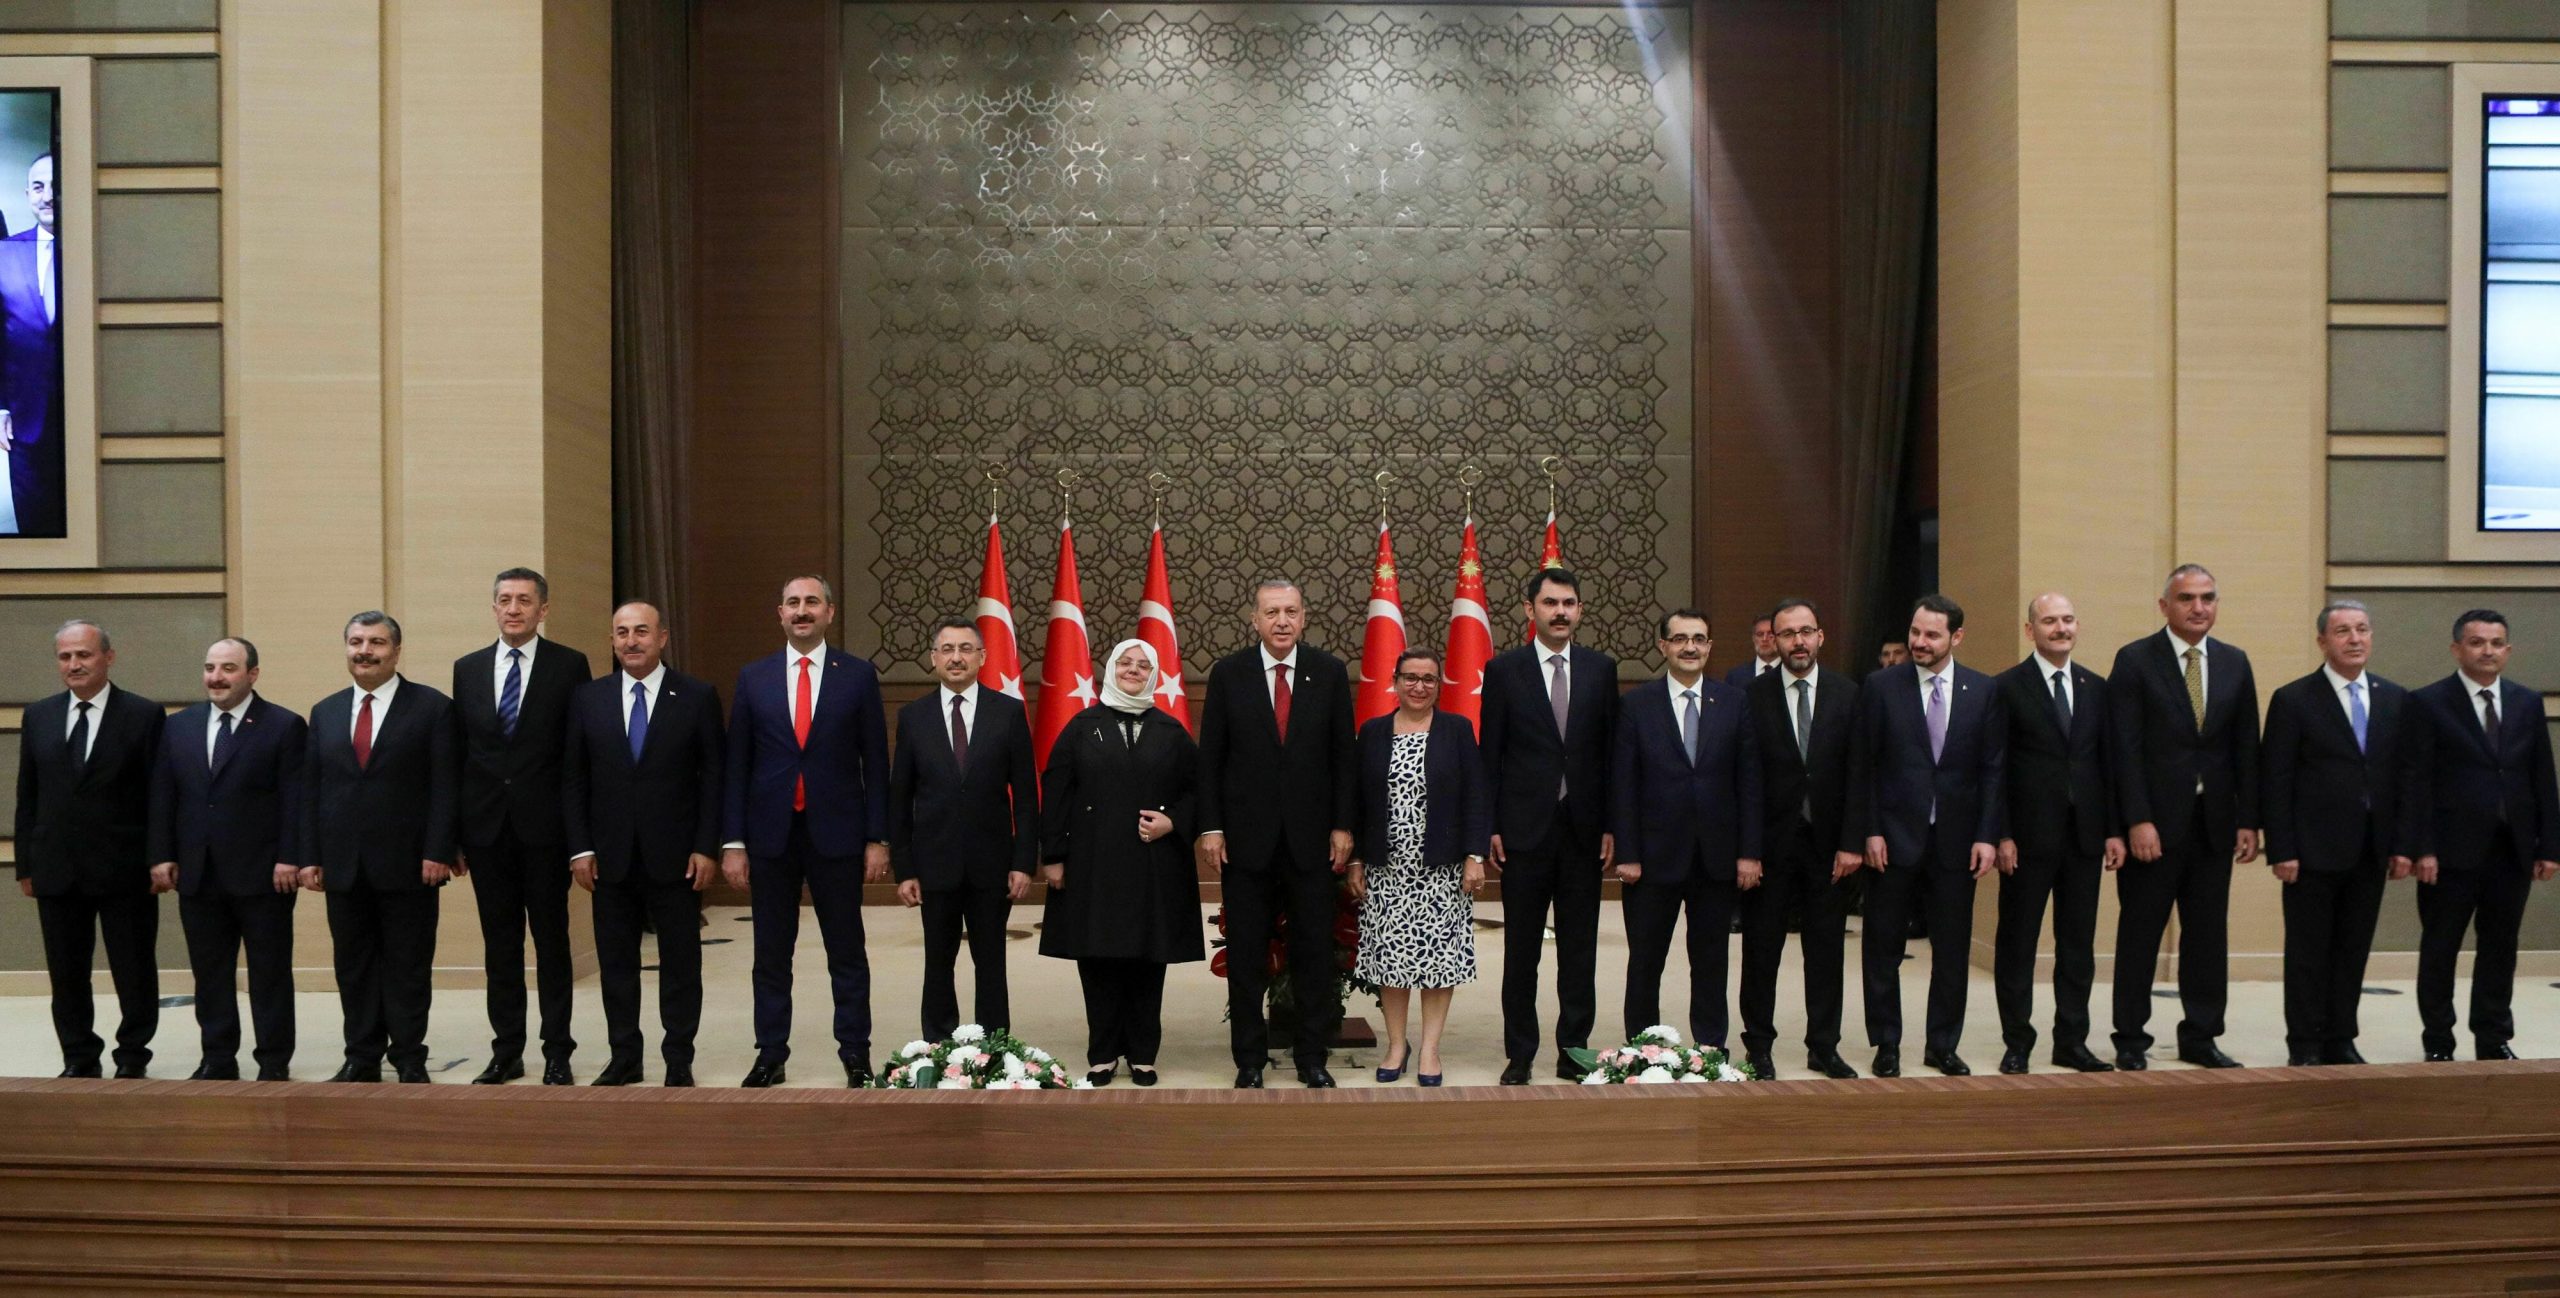 Τούρκος αναλυτής: Δεν είναι ο Ερντογάν που κυβερνά την Τουρκία